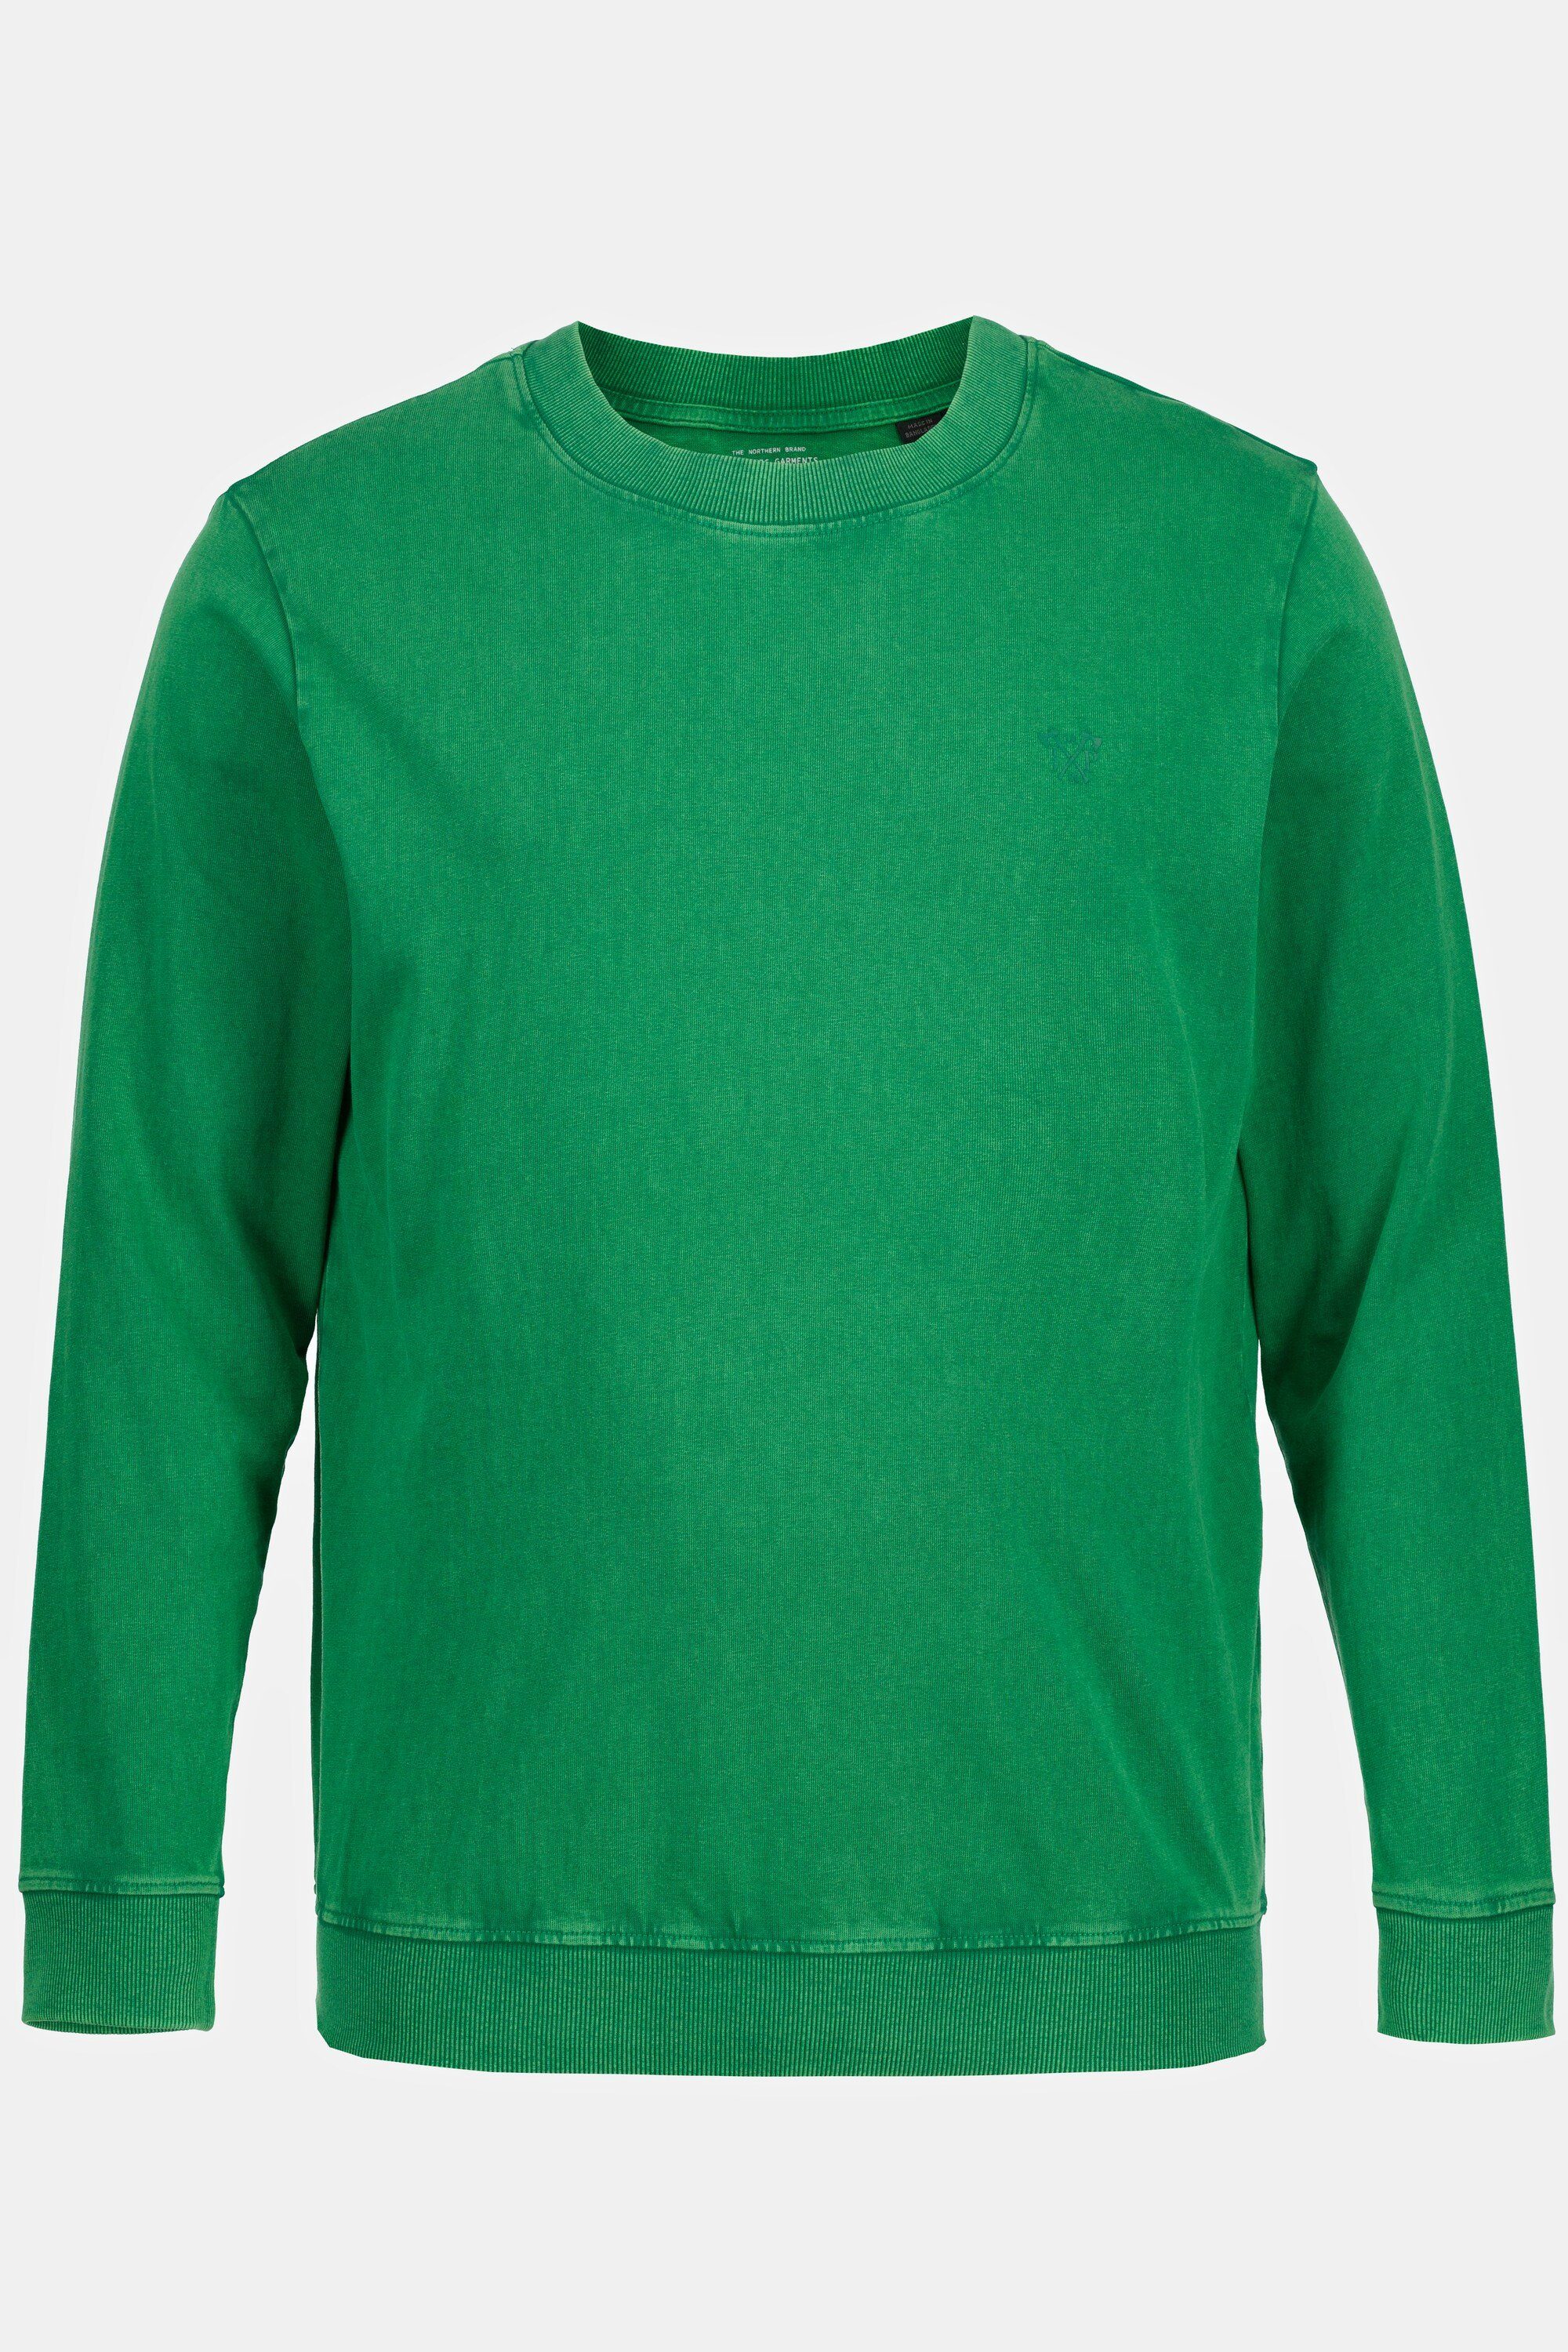 Qualität Sweatshirt JP1880 grün acid washed leichte Bauchfit T-Shirt